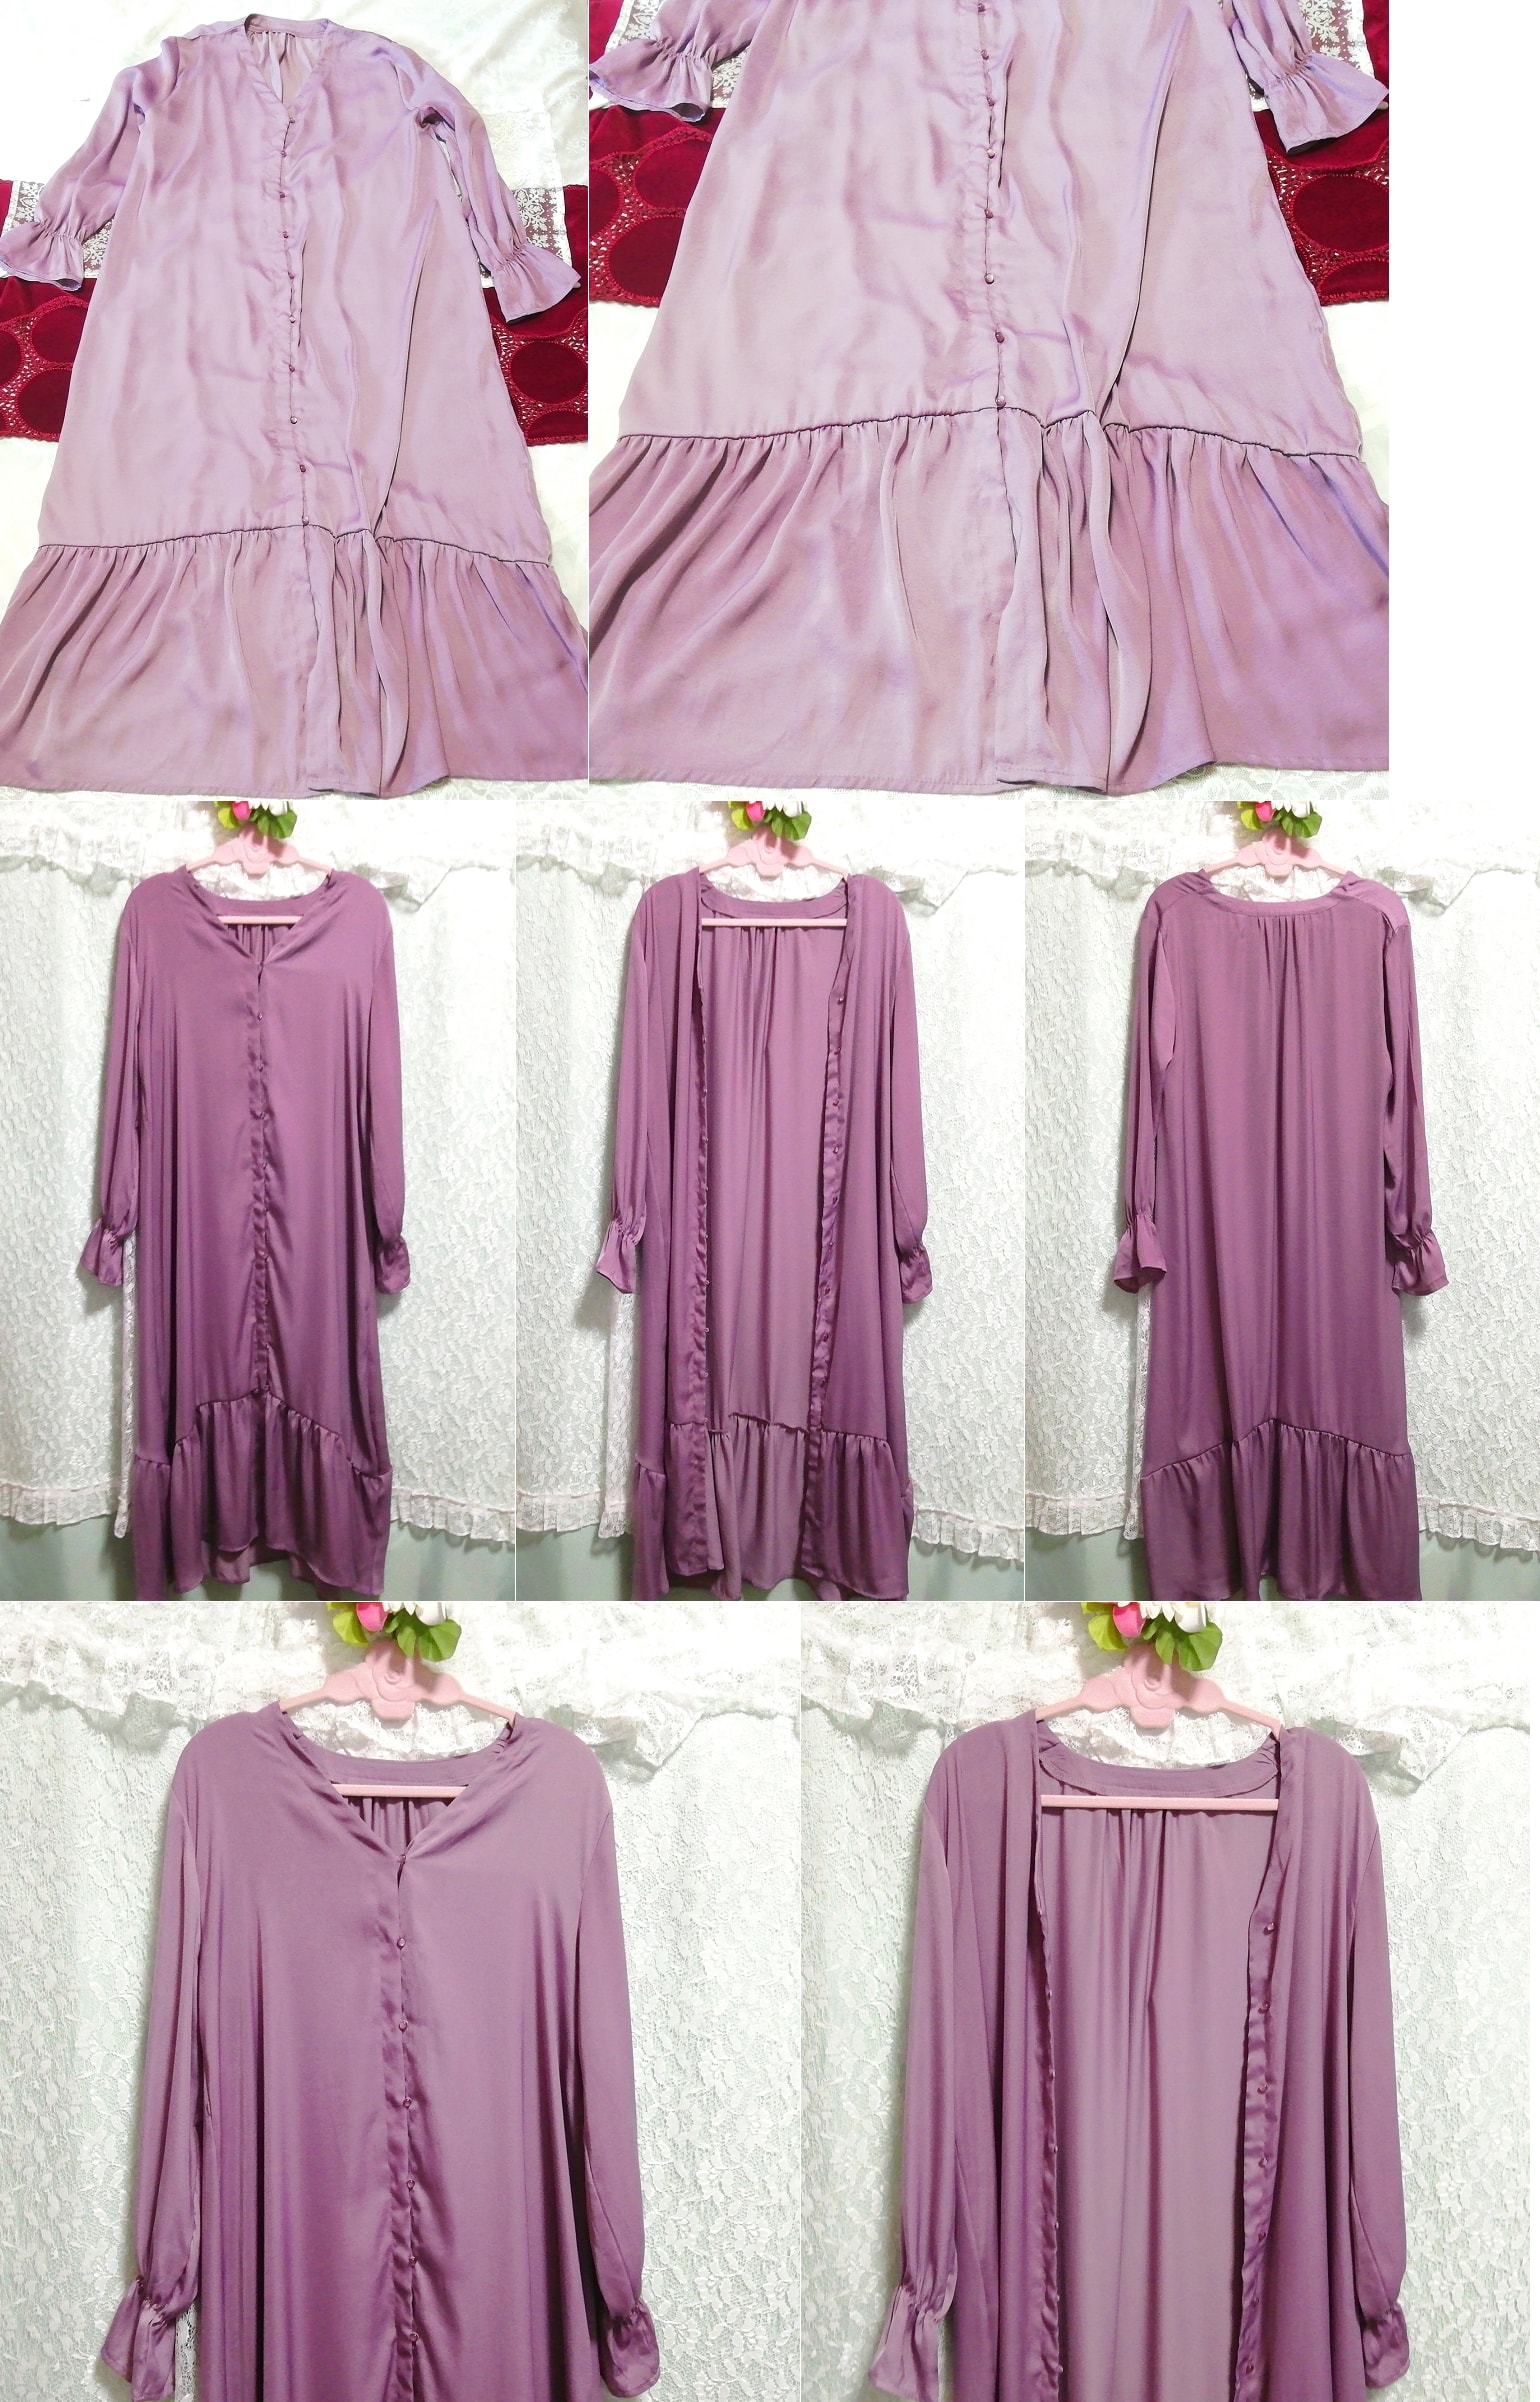 Purple maxi satin haori gown negligee nightgown nightwear dress, fashion, ladies' fashion, nightwear, pajamas